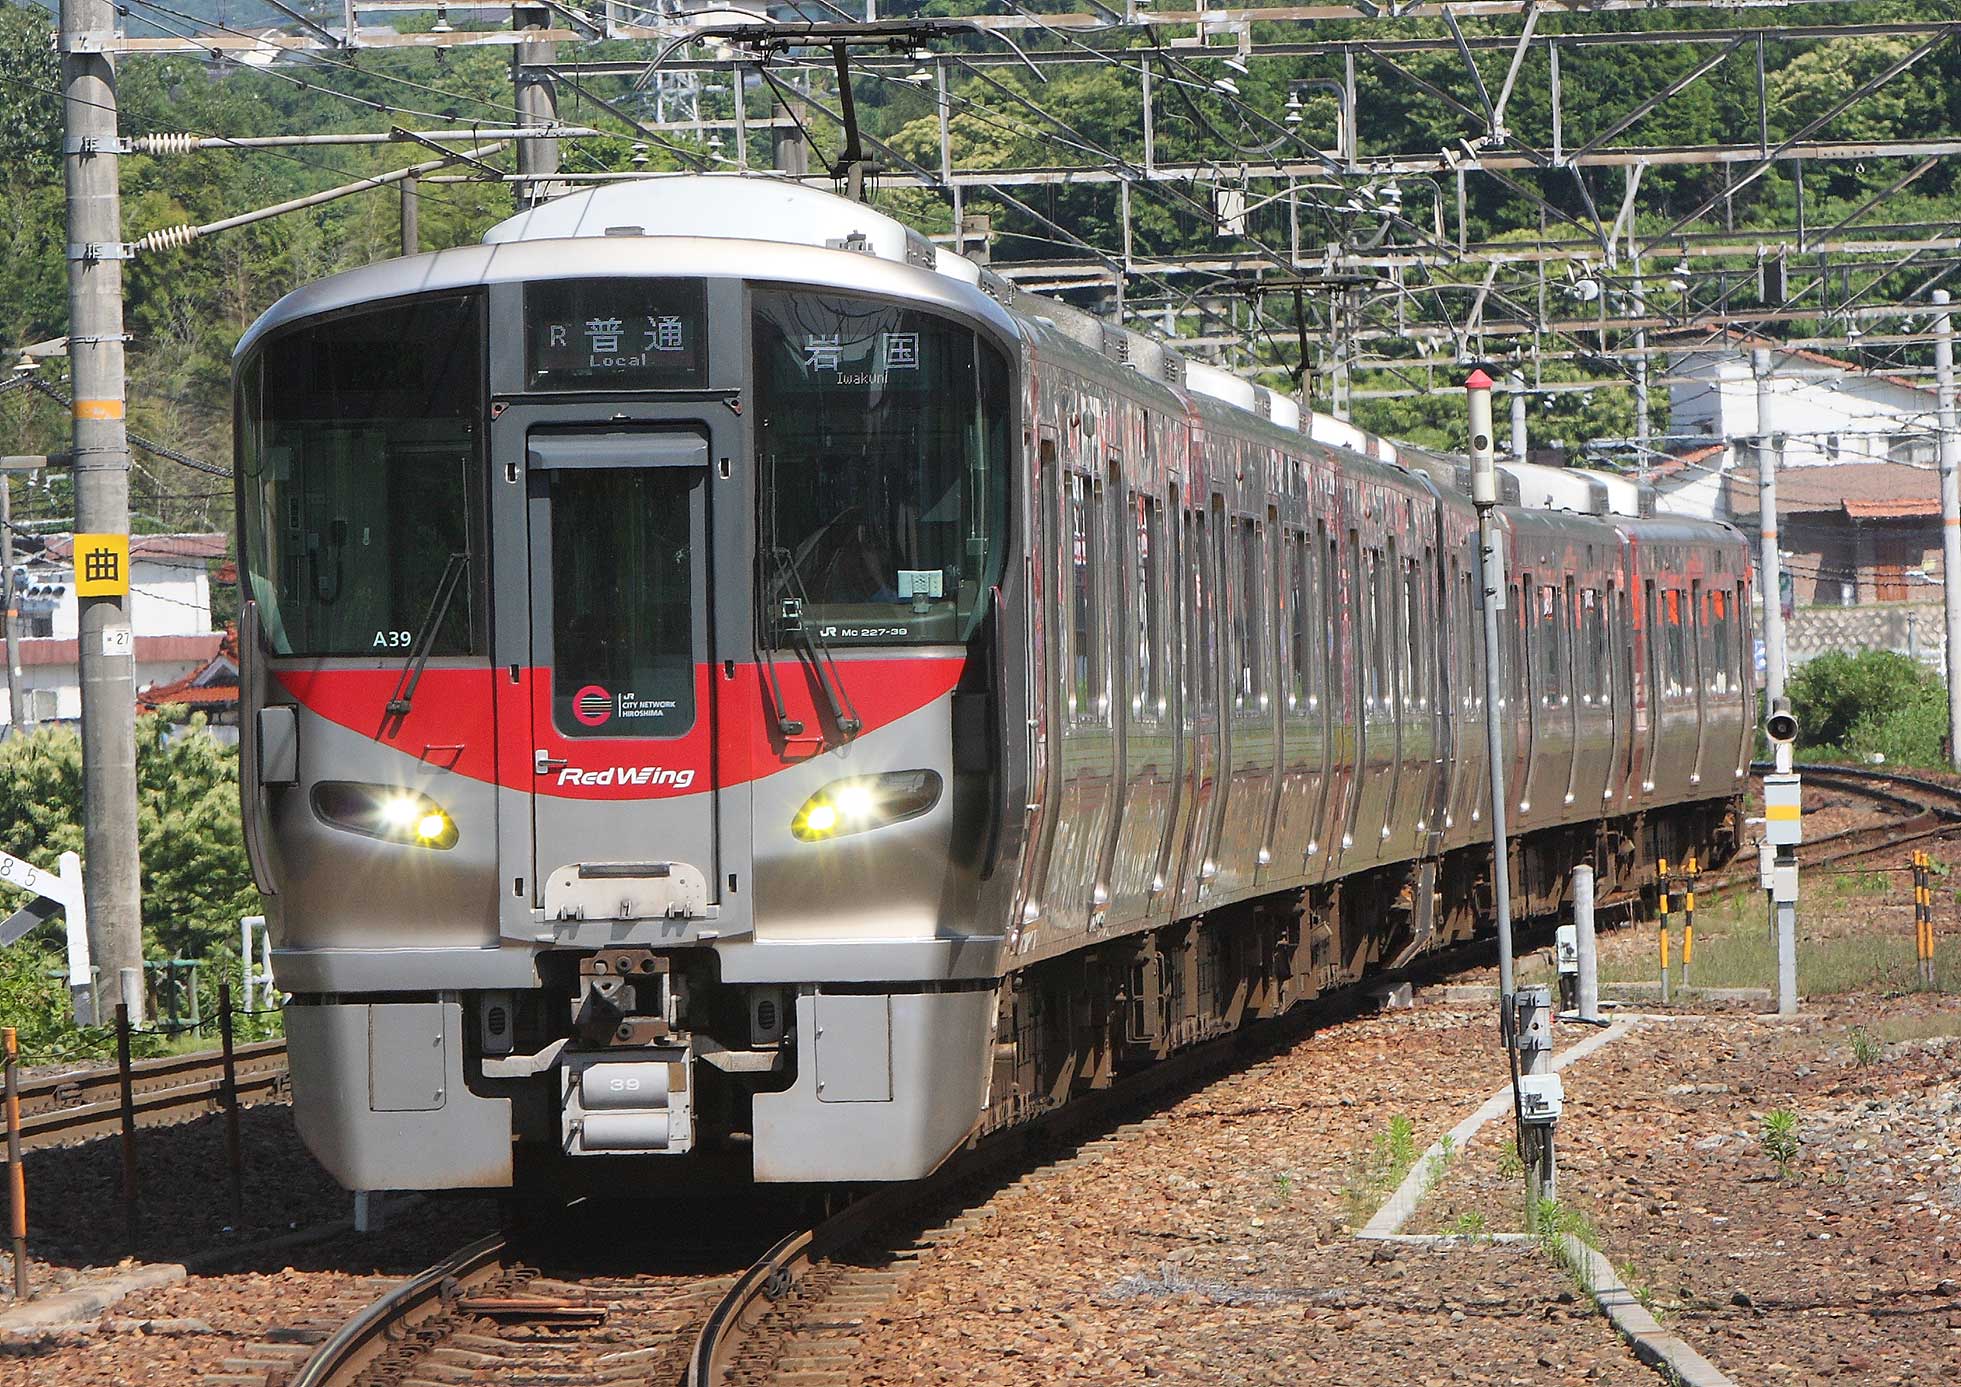 広島地区JR始まって以来の新型ローカル車両227系 | 電車のページ | 溝上慎一ホームページ Shinichi Mizokami's Website